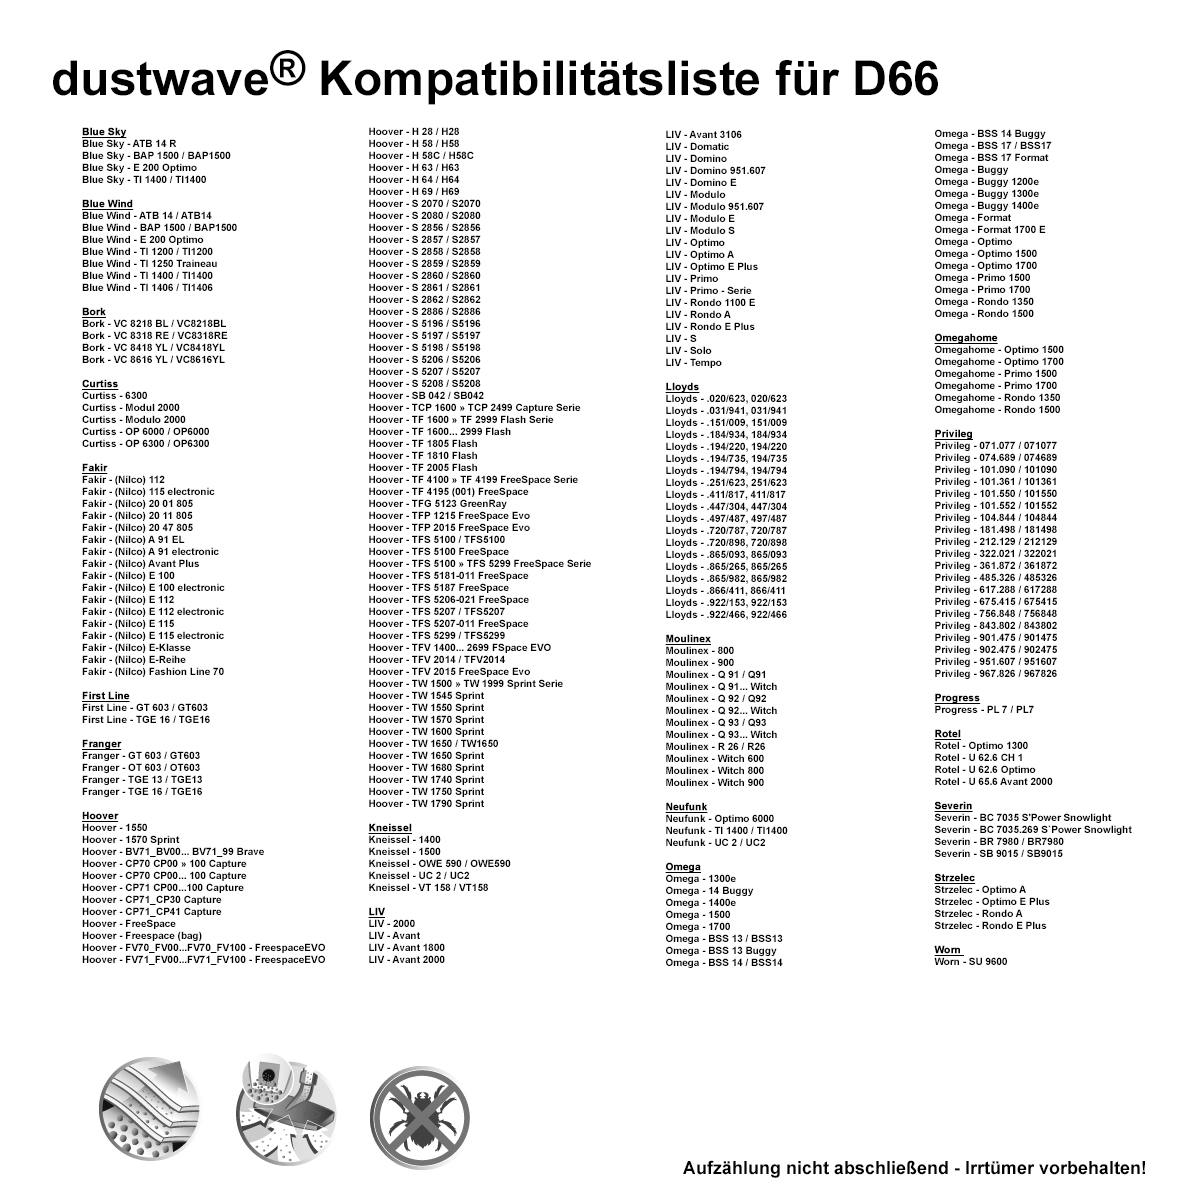 Dustwave® 20 Staubsaugerbeutel für Hoover CPC0_CP02011 - hocheffizient, mehrlagiges Mikrovlies mit Hygieneverschluss - Made in Germany